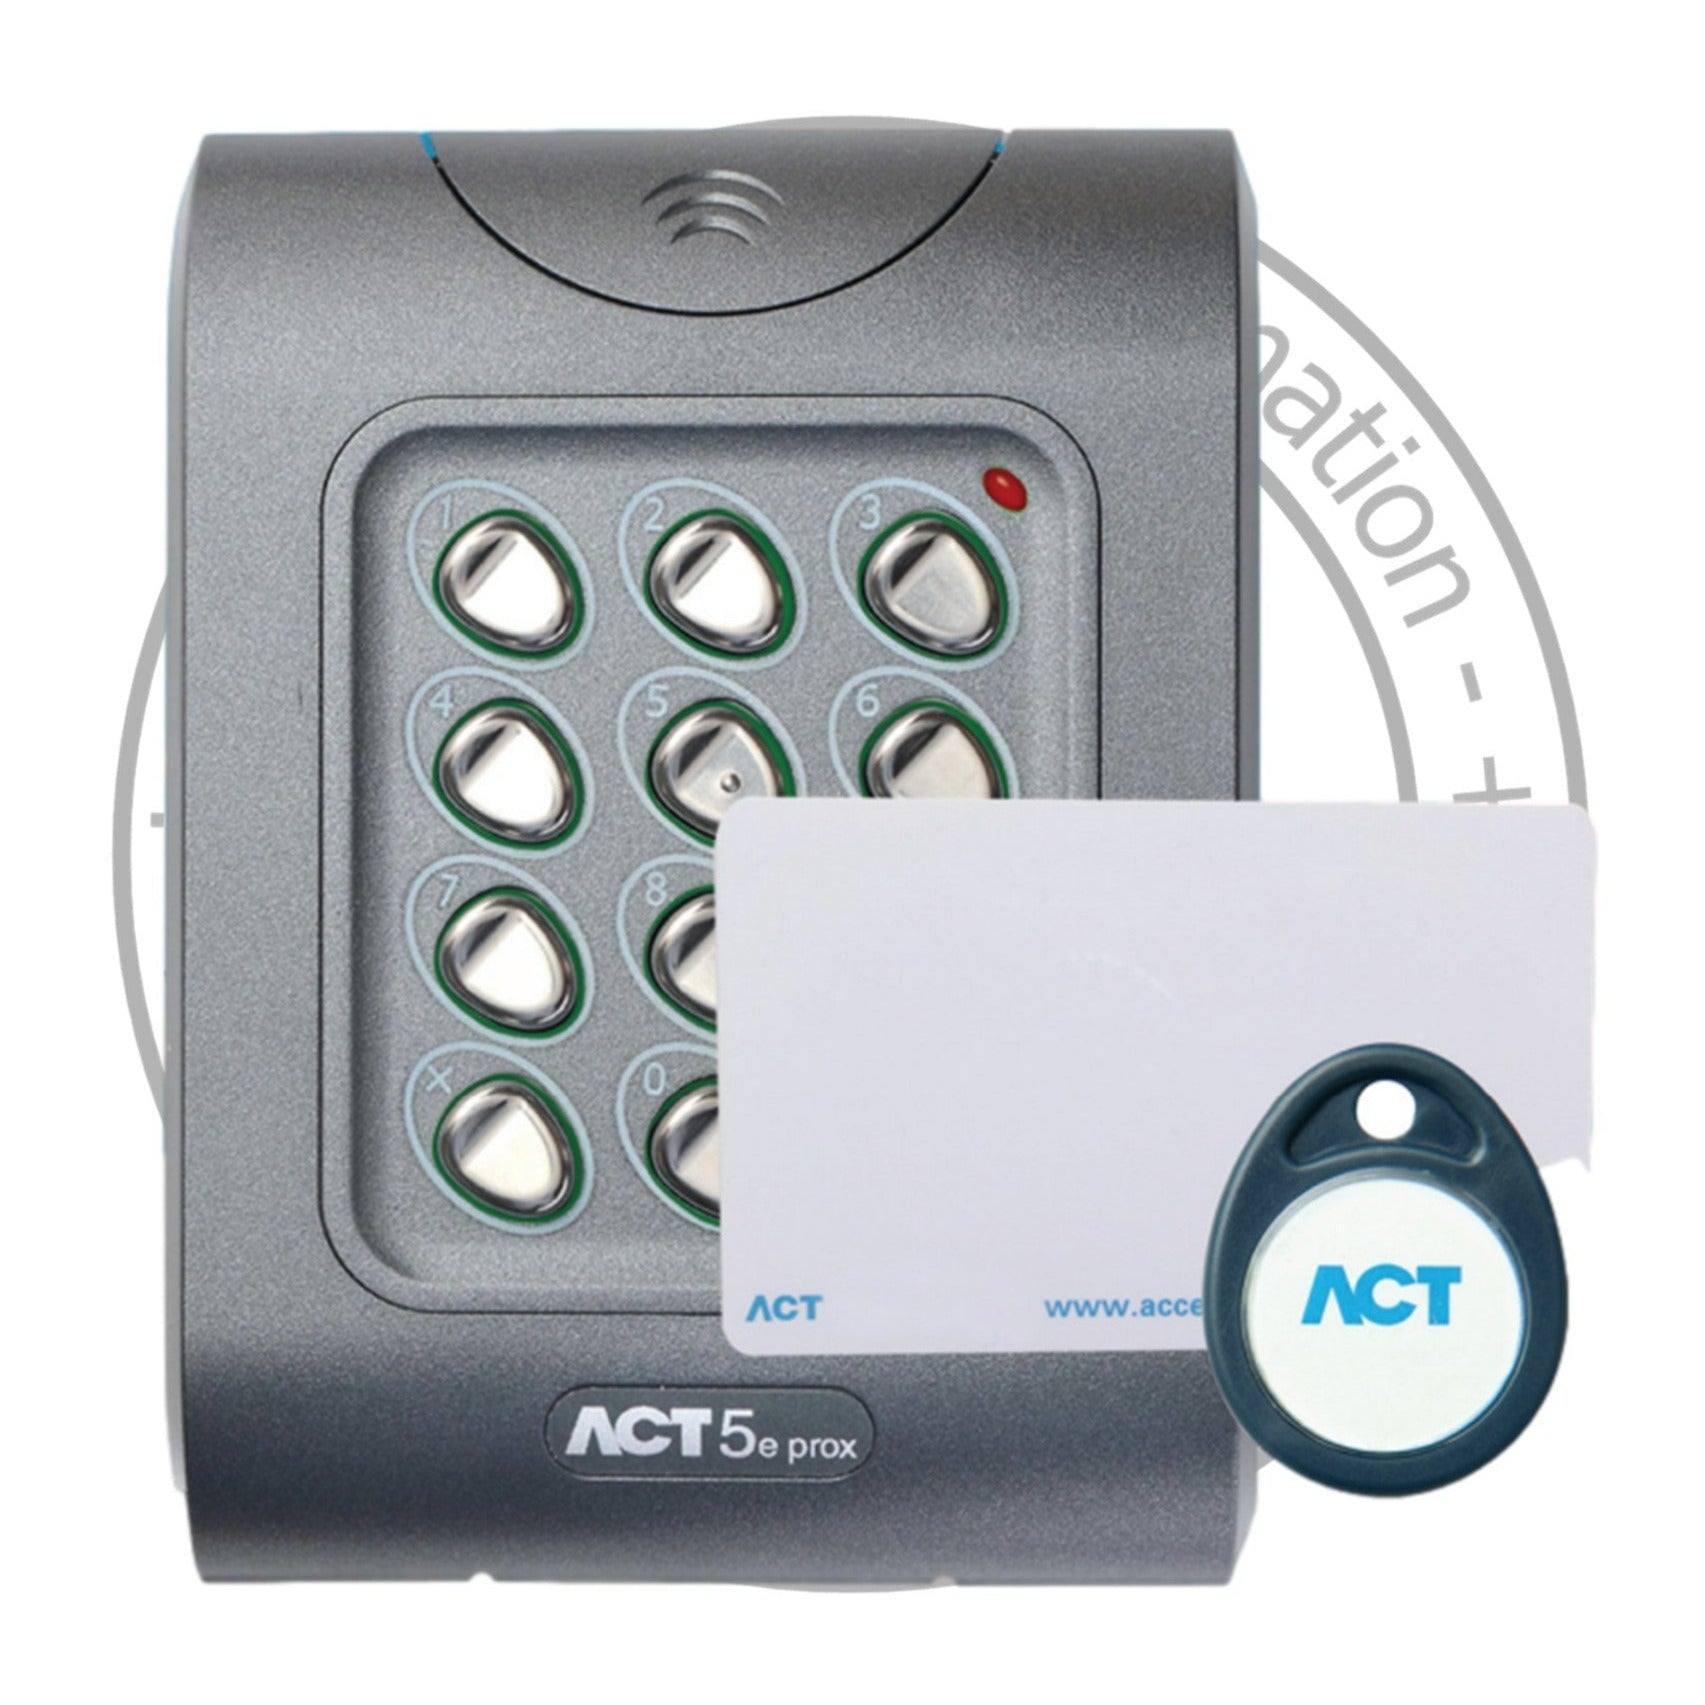 ACT 5e PROX - Digital Keypad with Proximity